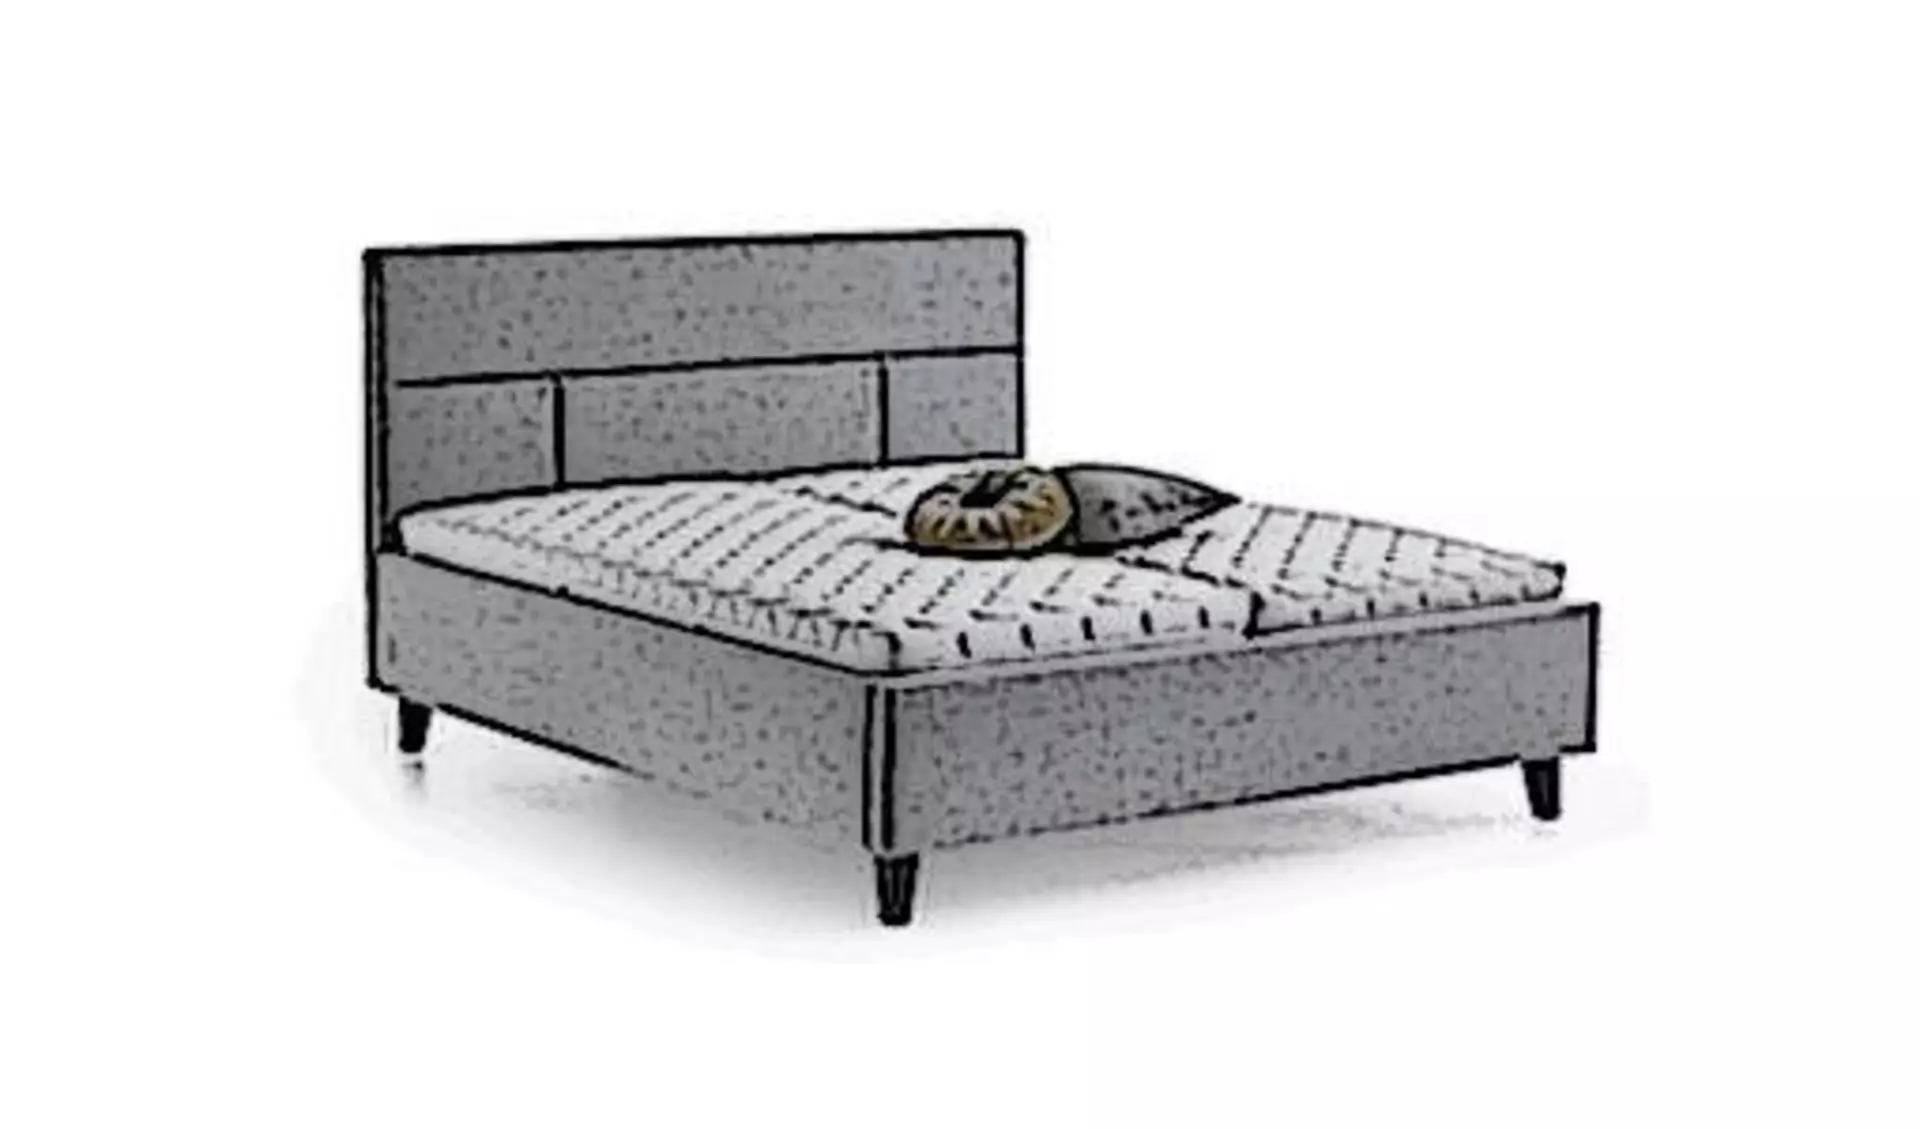 Icon für Polsterbett ist ein stilisiertes Bett mit grauem Stoffbezug und gepolstertem Rückenteil.